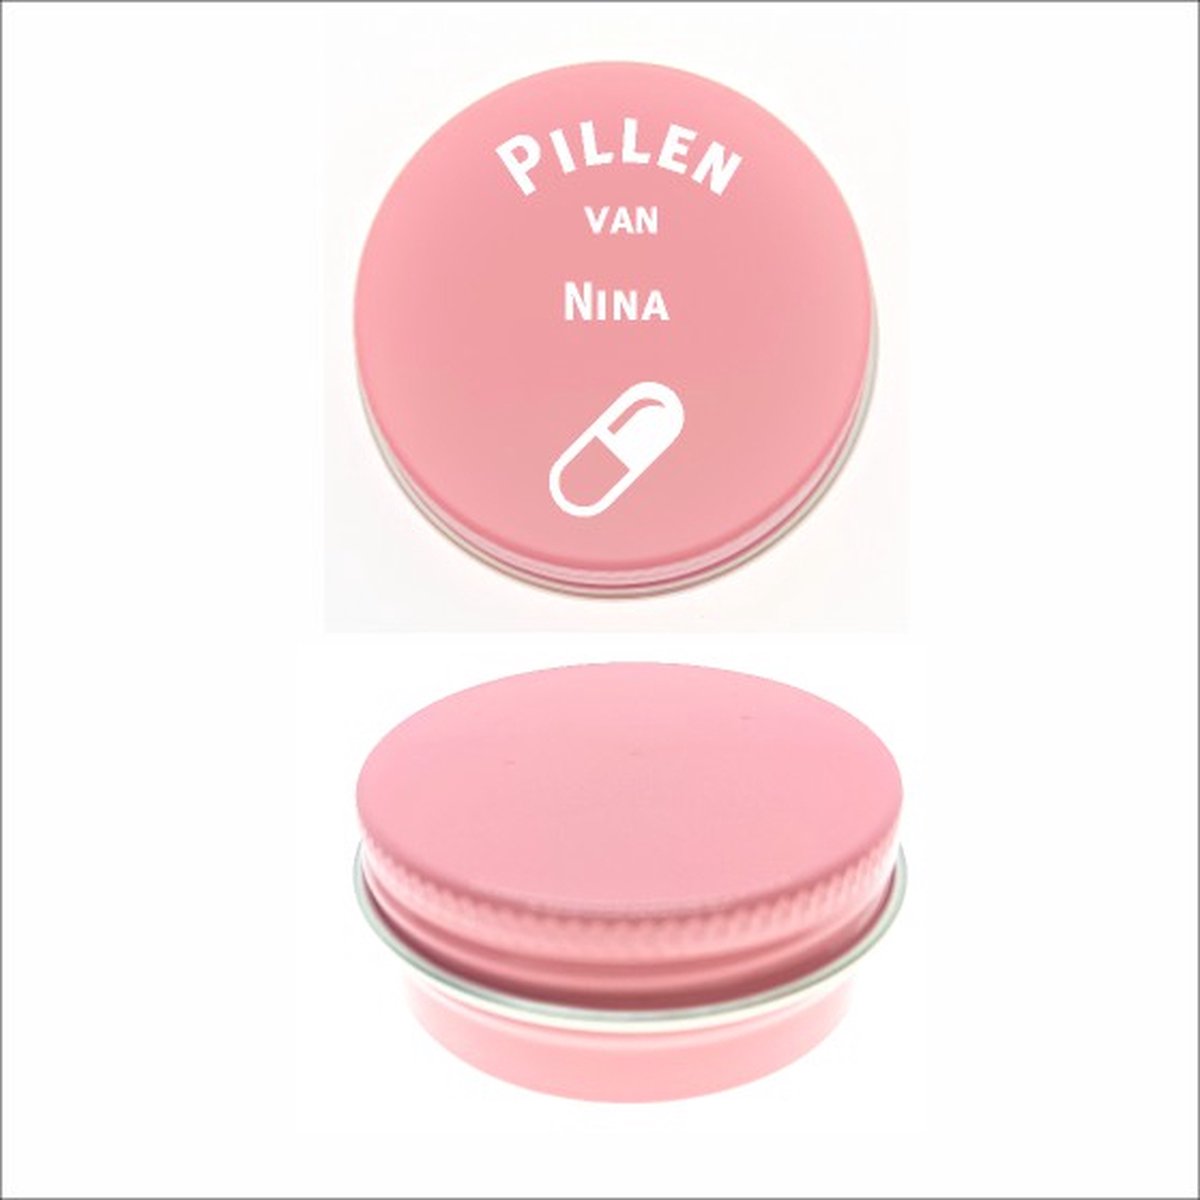 Pillen Blikje Met Naam Gravering - Nina